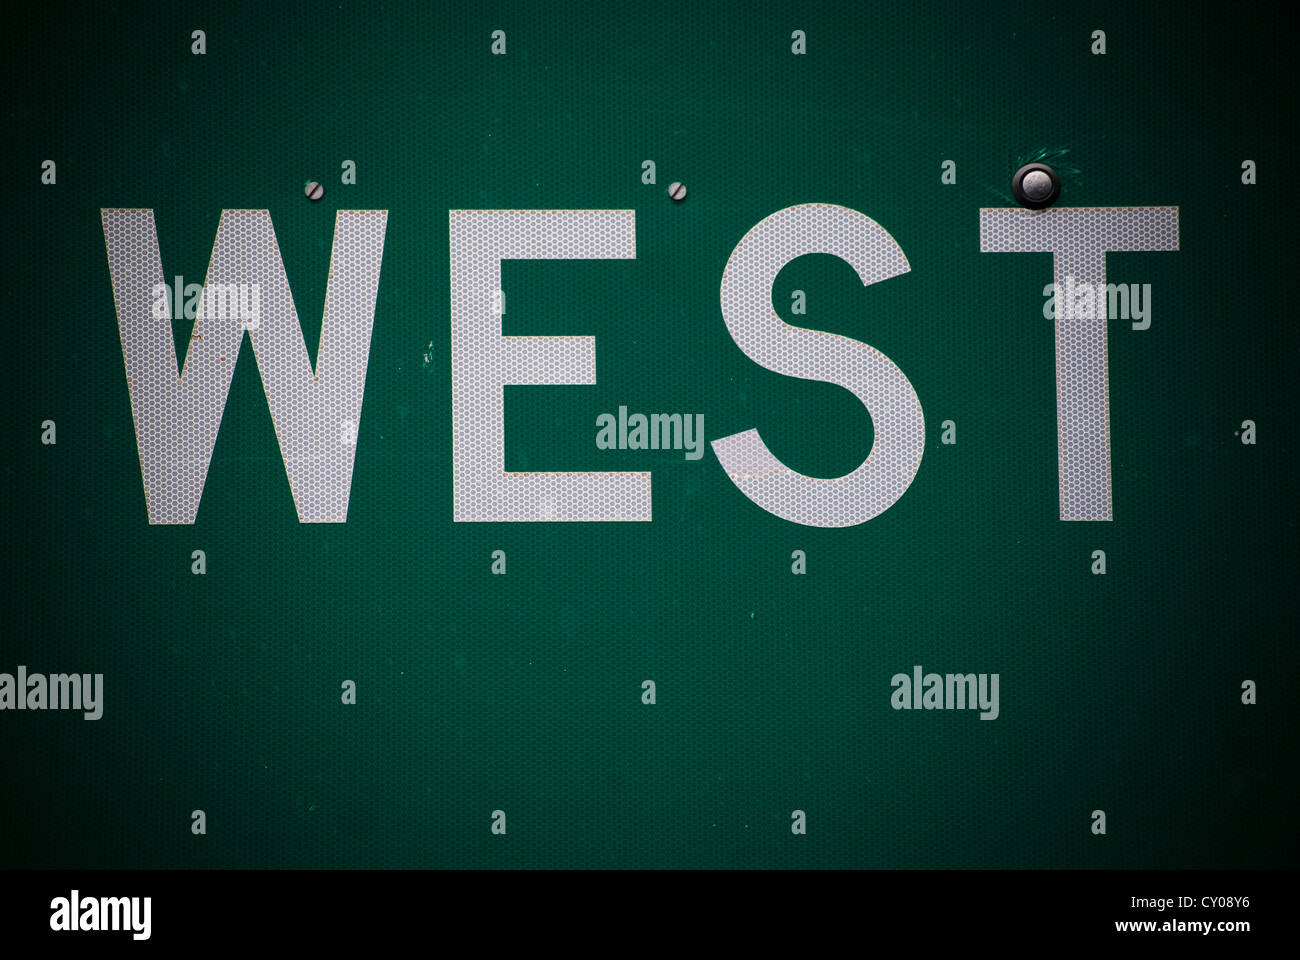 Cierre detallada de señal en carretera interestatal con la palabra "west" adoptada en la Interstate 40 East de Albuquerque, Nuevo México, EE.UU.. Foto de stock